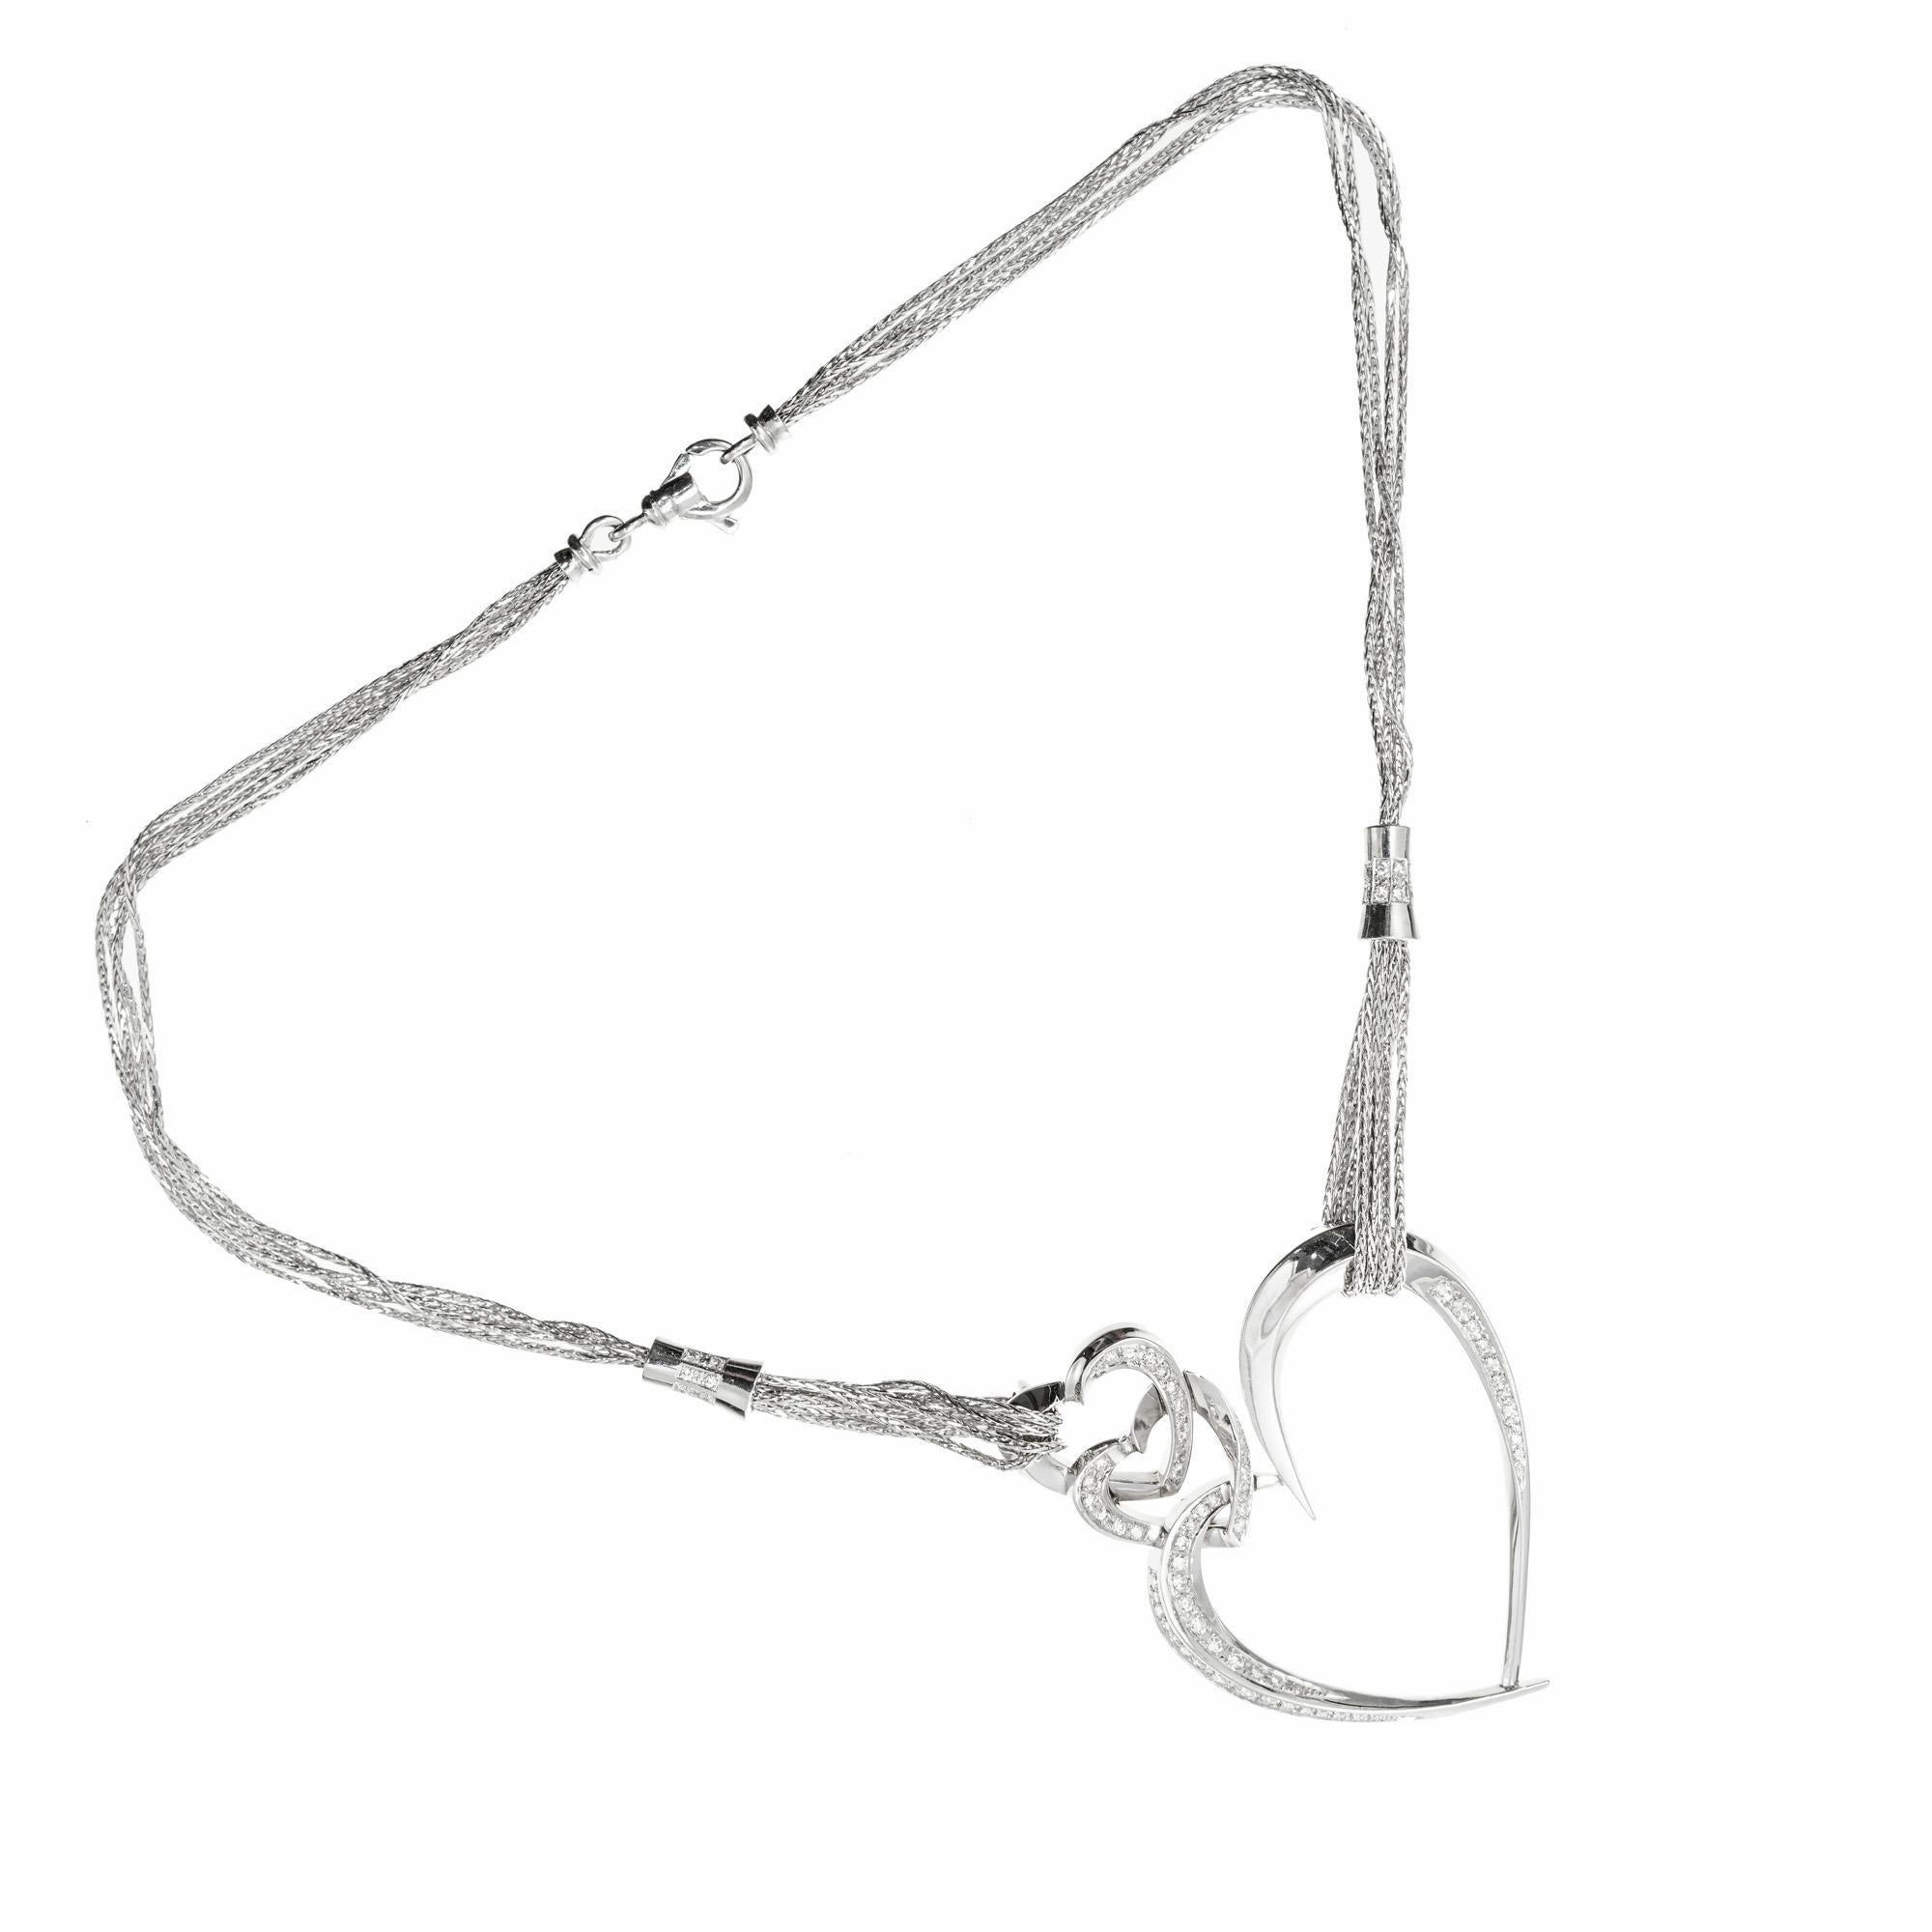 Pendentif en diamant à triple cœur avec un collier en or blanc à quatre rangs de chaque côté avec des connecteurs en diamant. Circa 1970.

Pendentif : 59 diamants ronds, poids total approx. 0,59 ct, G - H, SI
Chaîne : 32 ronds d'un poids total